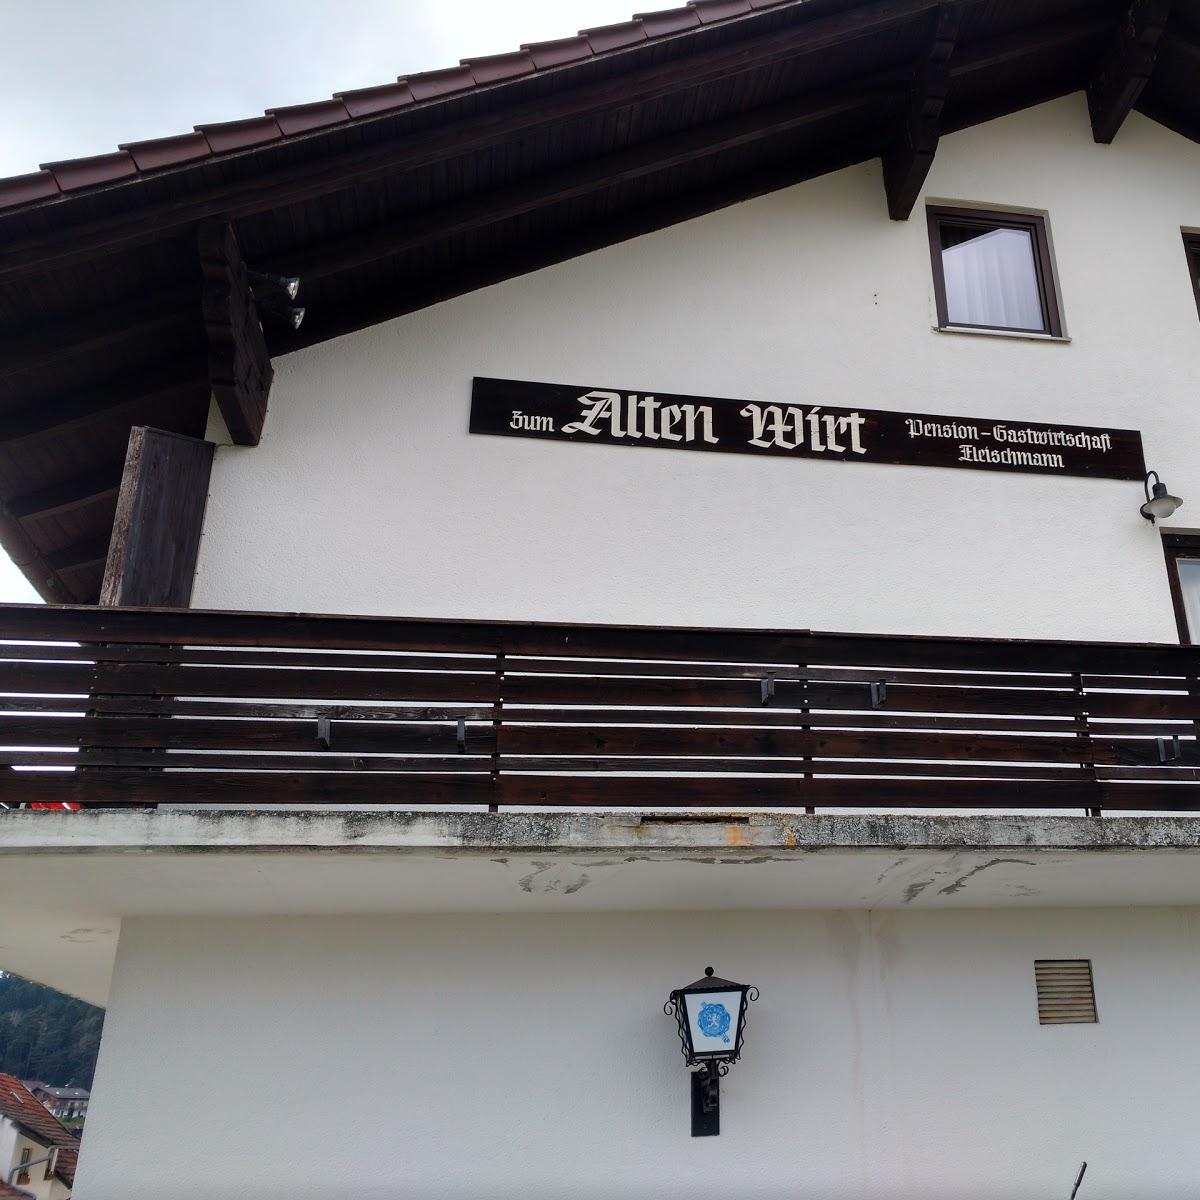 Restaurant "Zum Alten Wirt" in Prackenbach